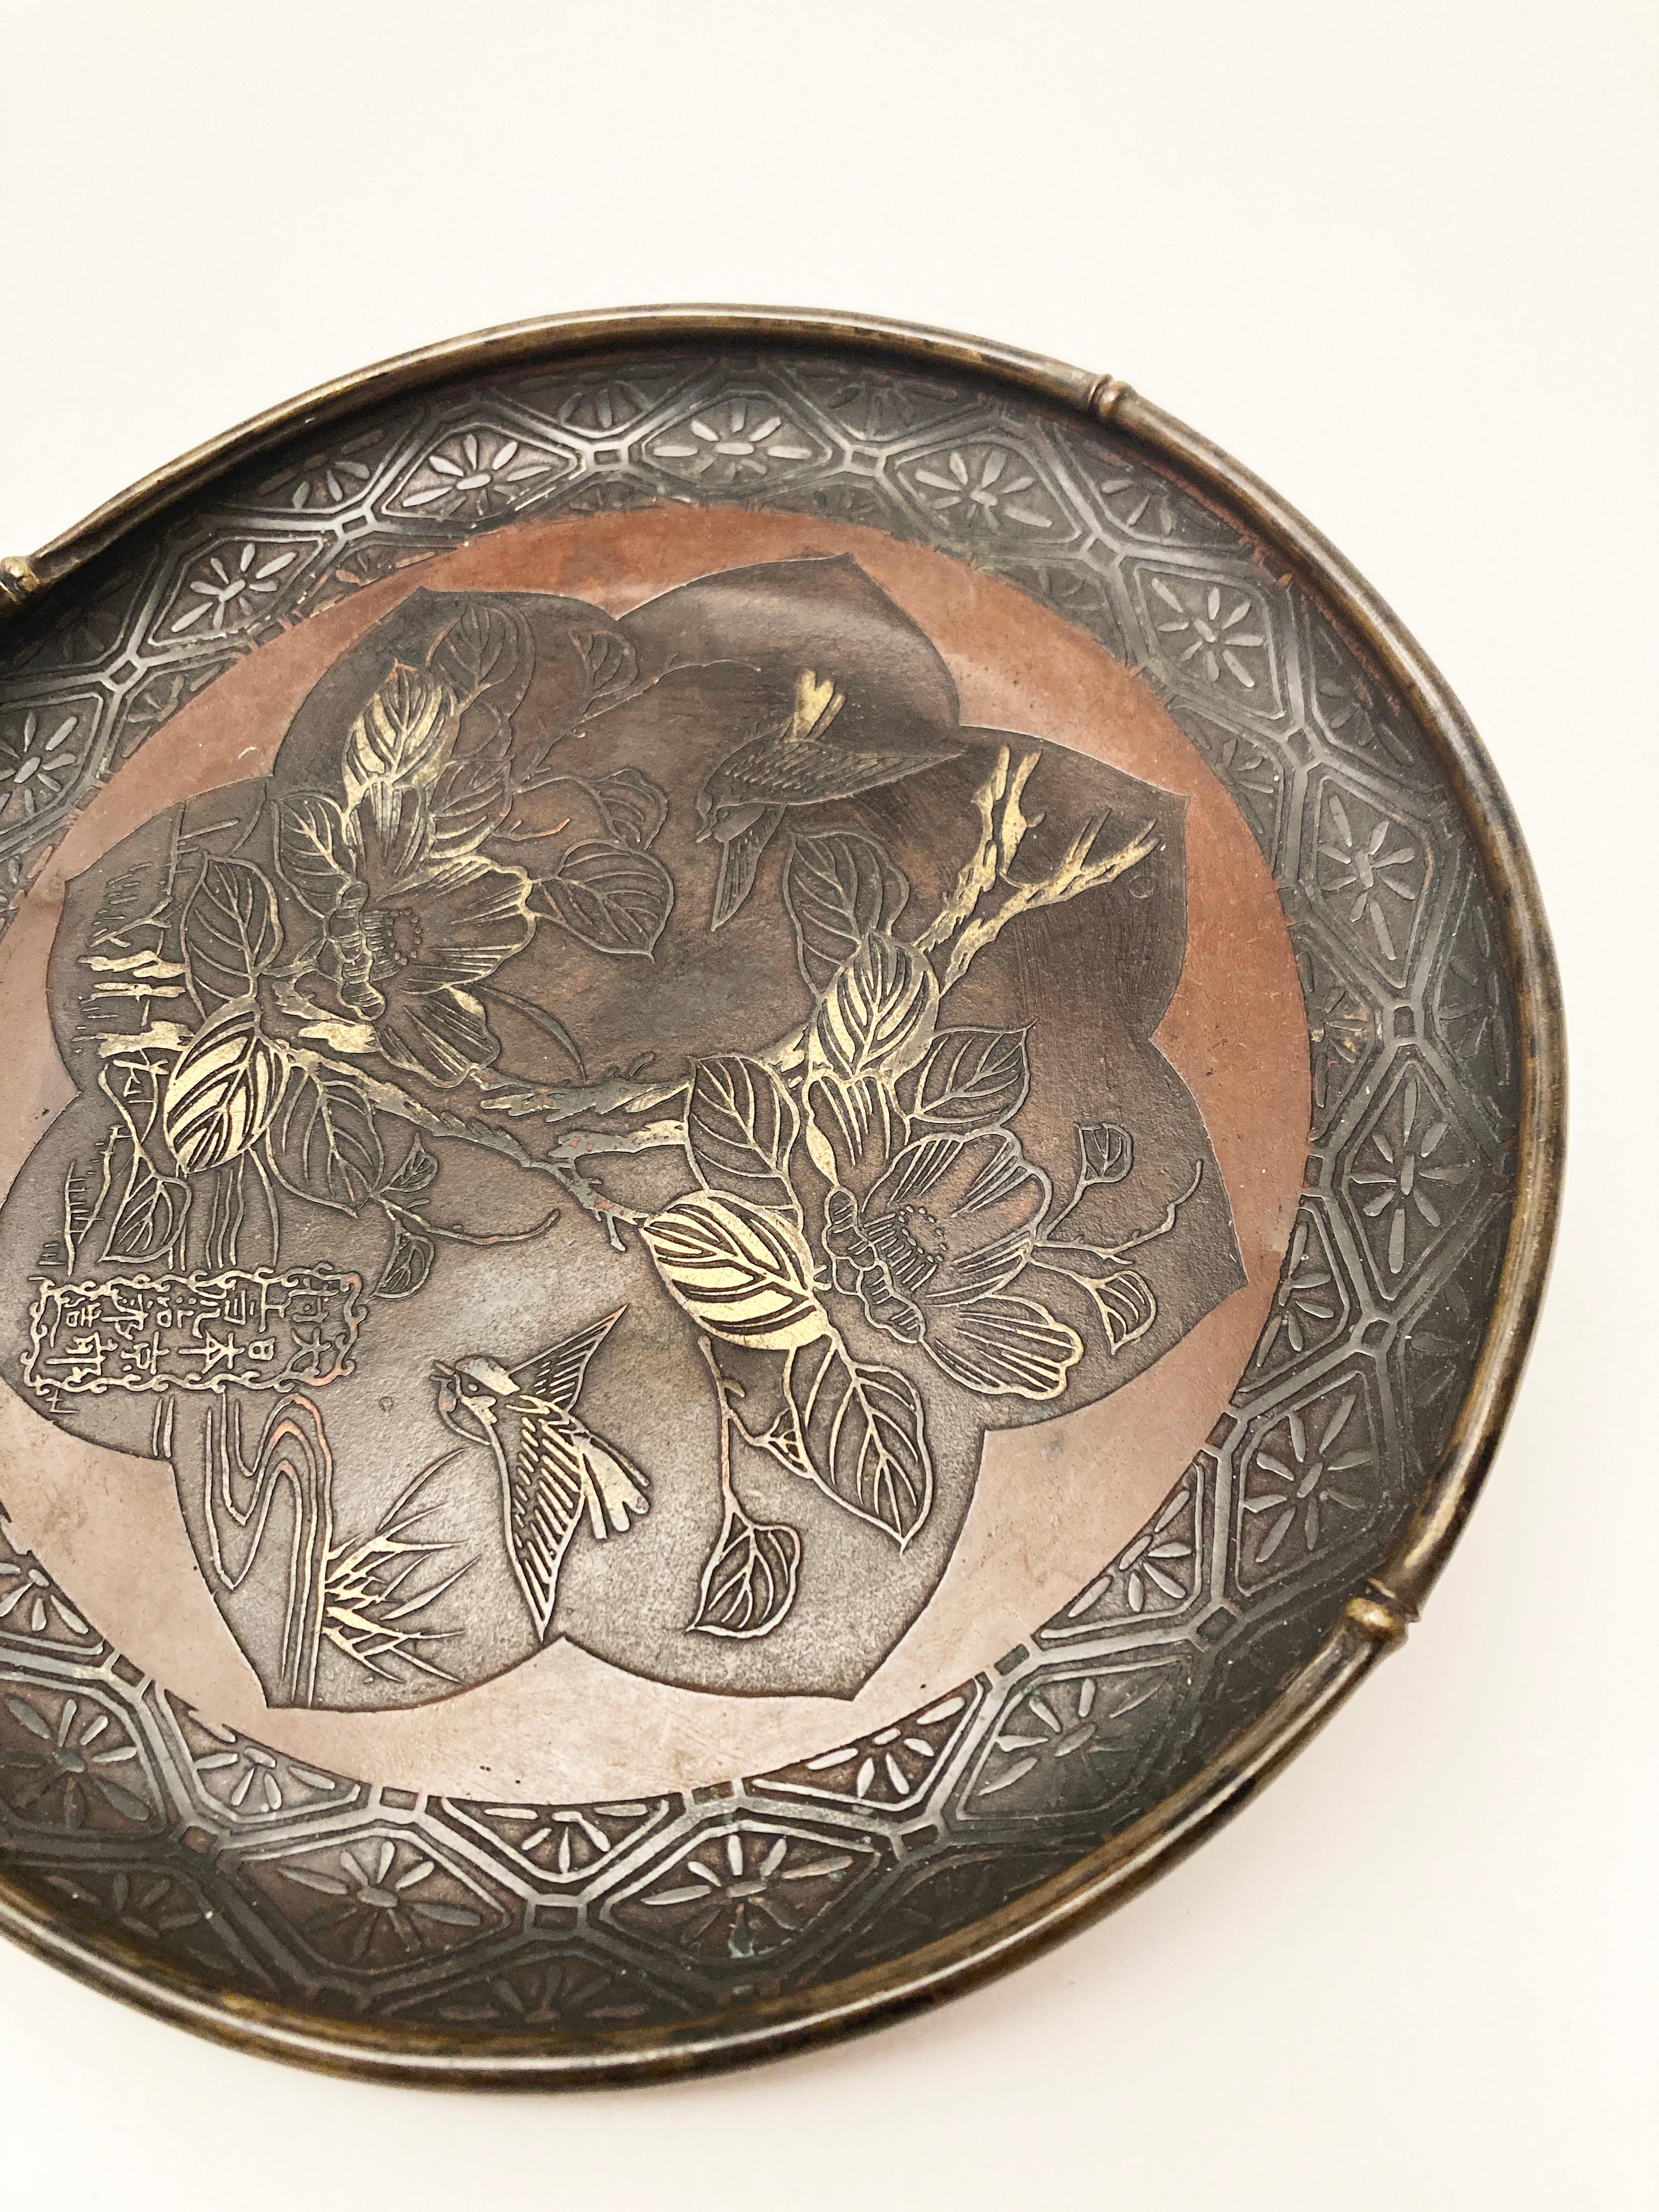 Dieses atemberaubende Werk japanischer Metallarbeit ist brillant in Detail und Handwerkskunst. Die aus Kupfer, Bronze und vielleicht auch anderen Metallen gefertigten Bilder in der Mitte des Tellers sind bemerkenswert. Die Kreation, die